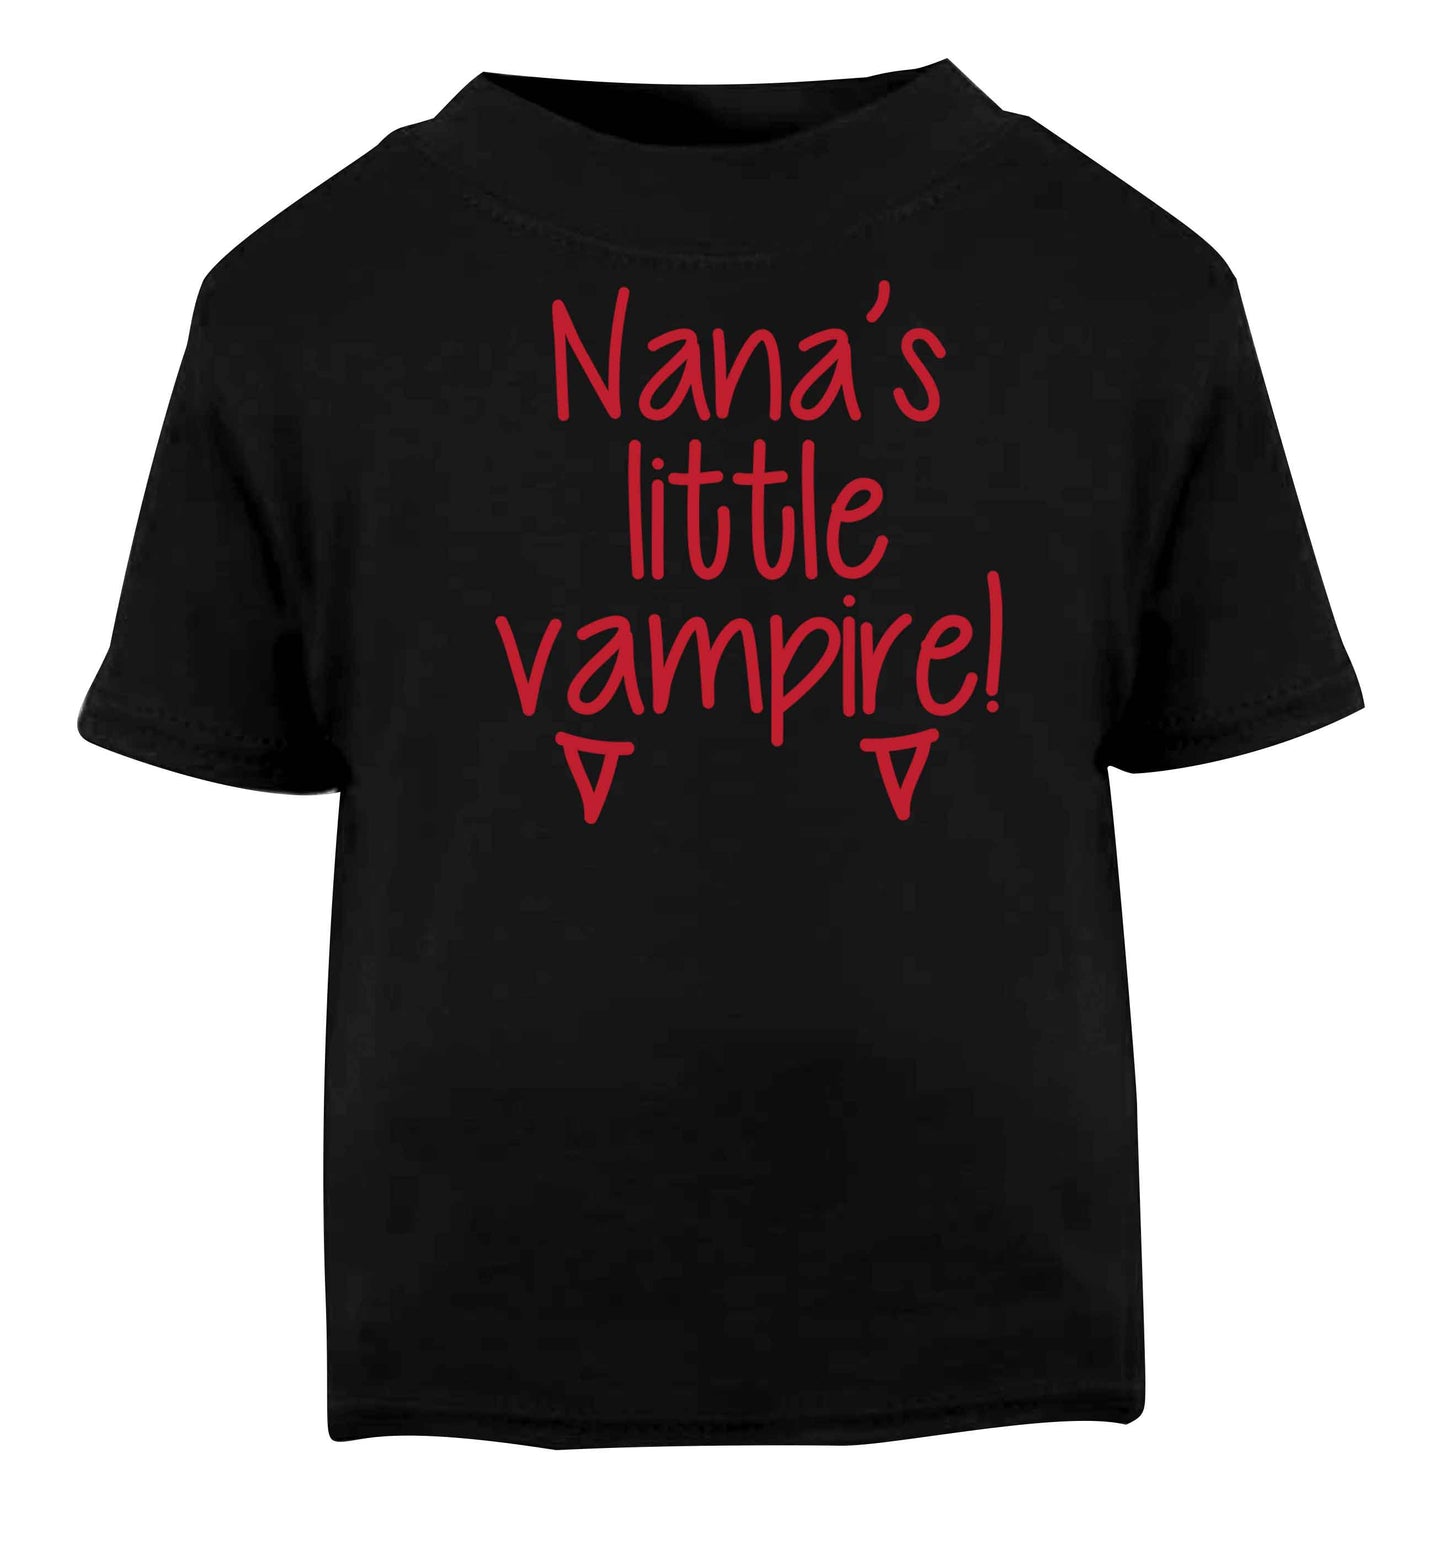 Nana's little vampire Black baby toddler Tshirt 2 years